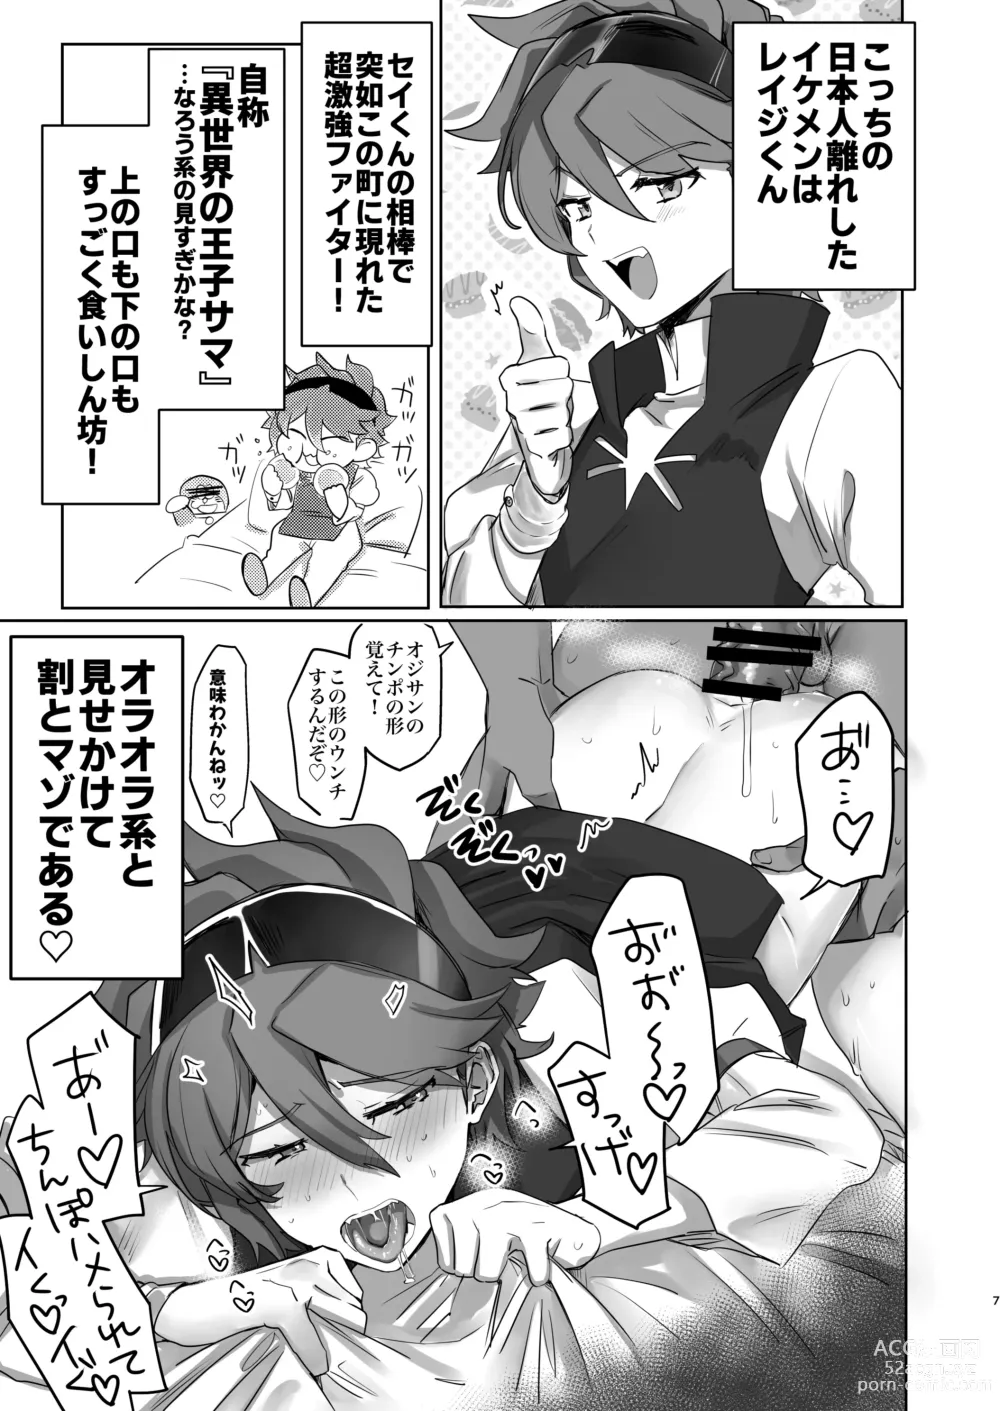 Page 6 of doujinshi Iori Mokei Ura!?